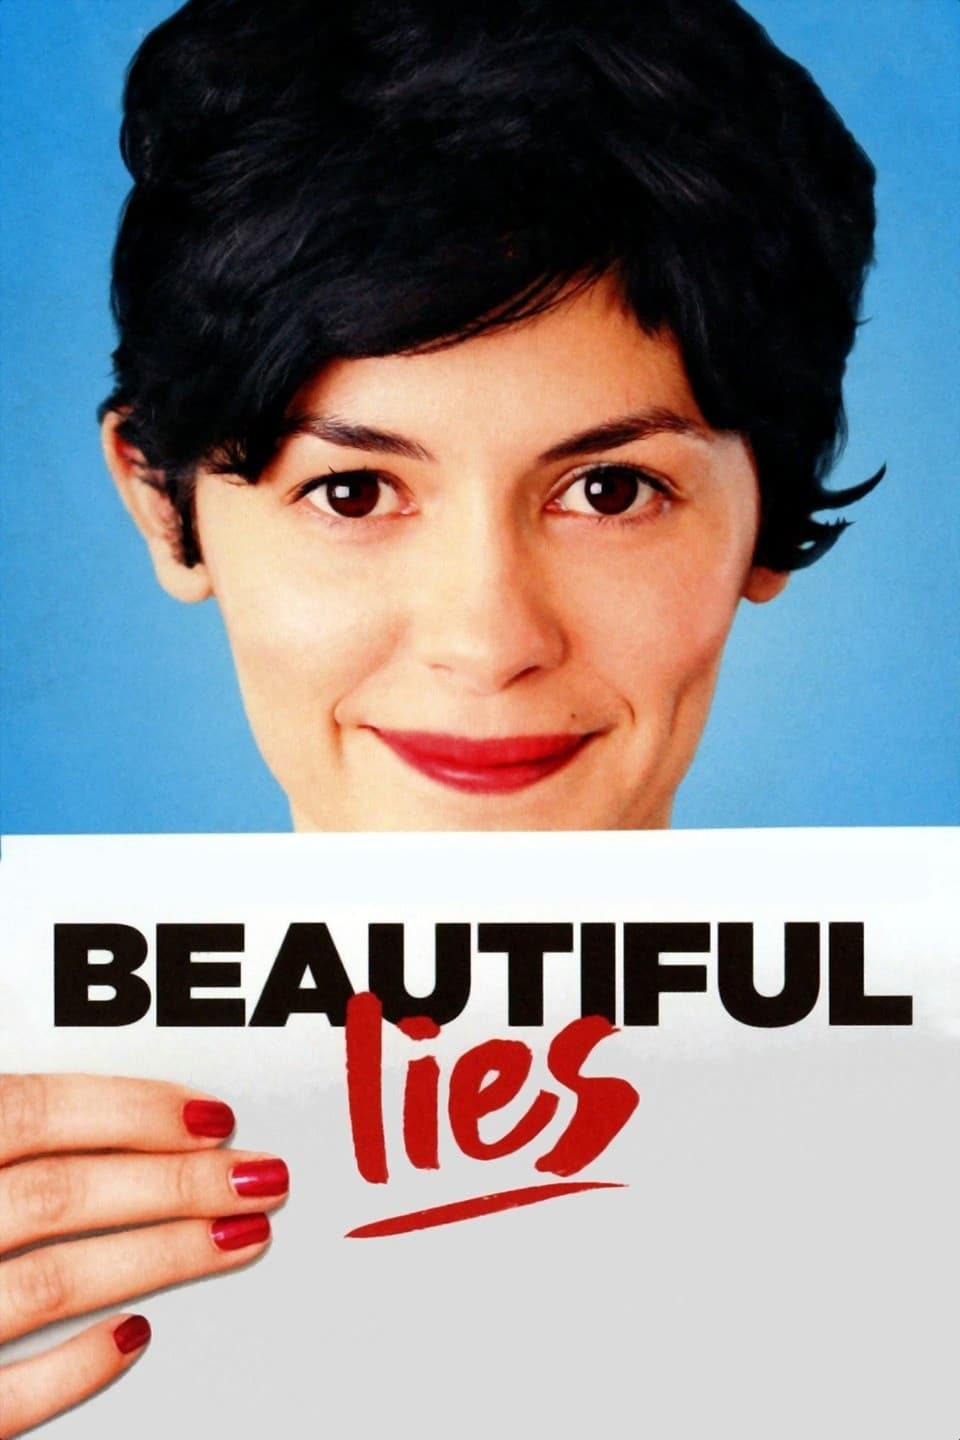 Beautiful Lies (2010)